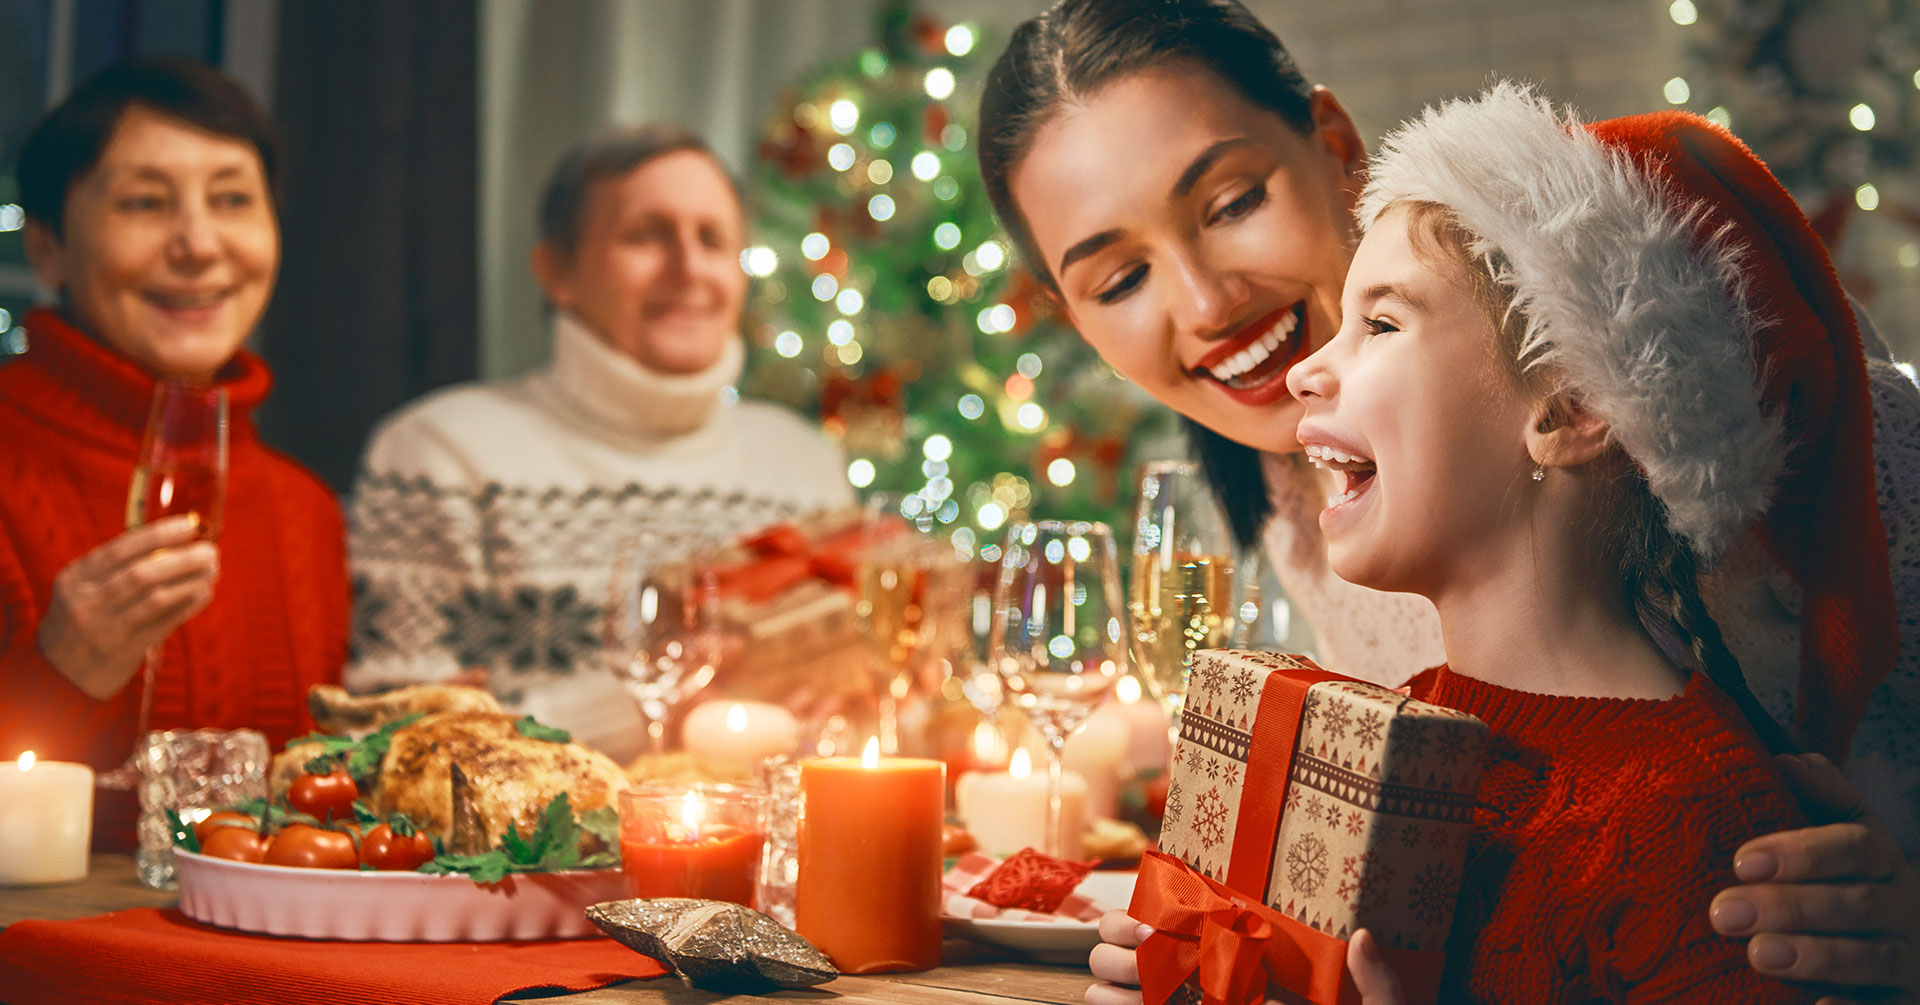 Recetas navideñas con avena para celebrar en familia